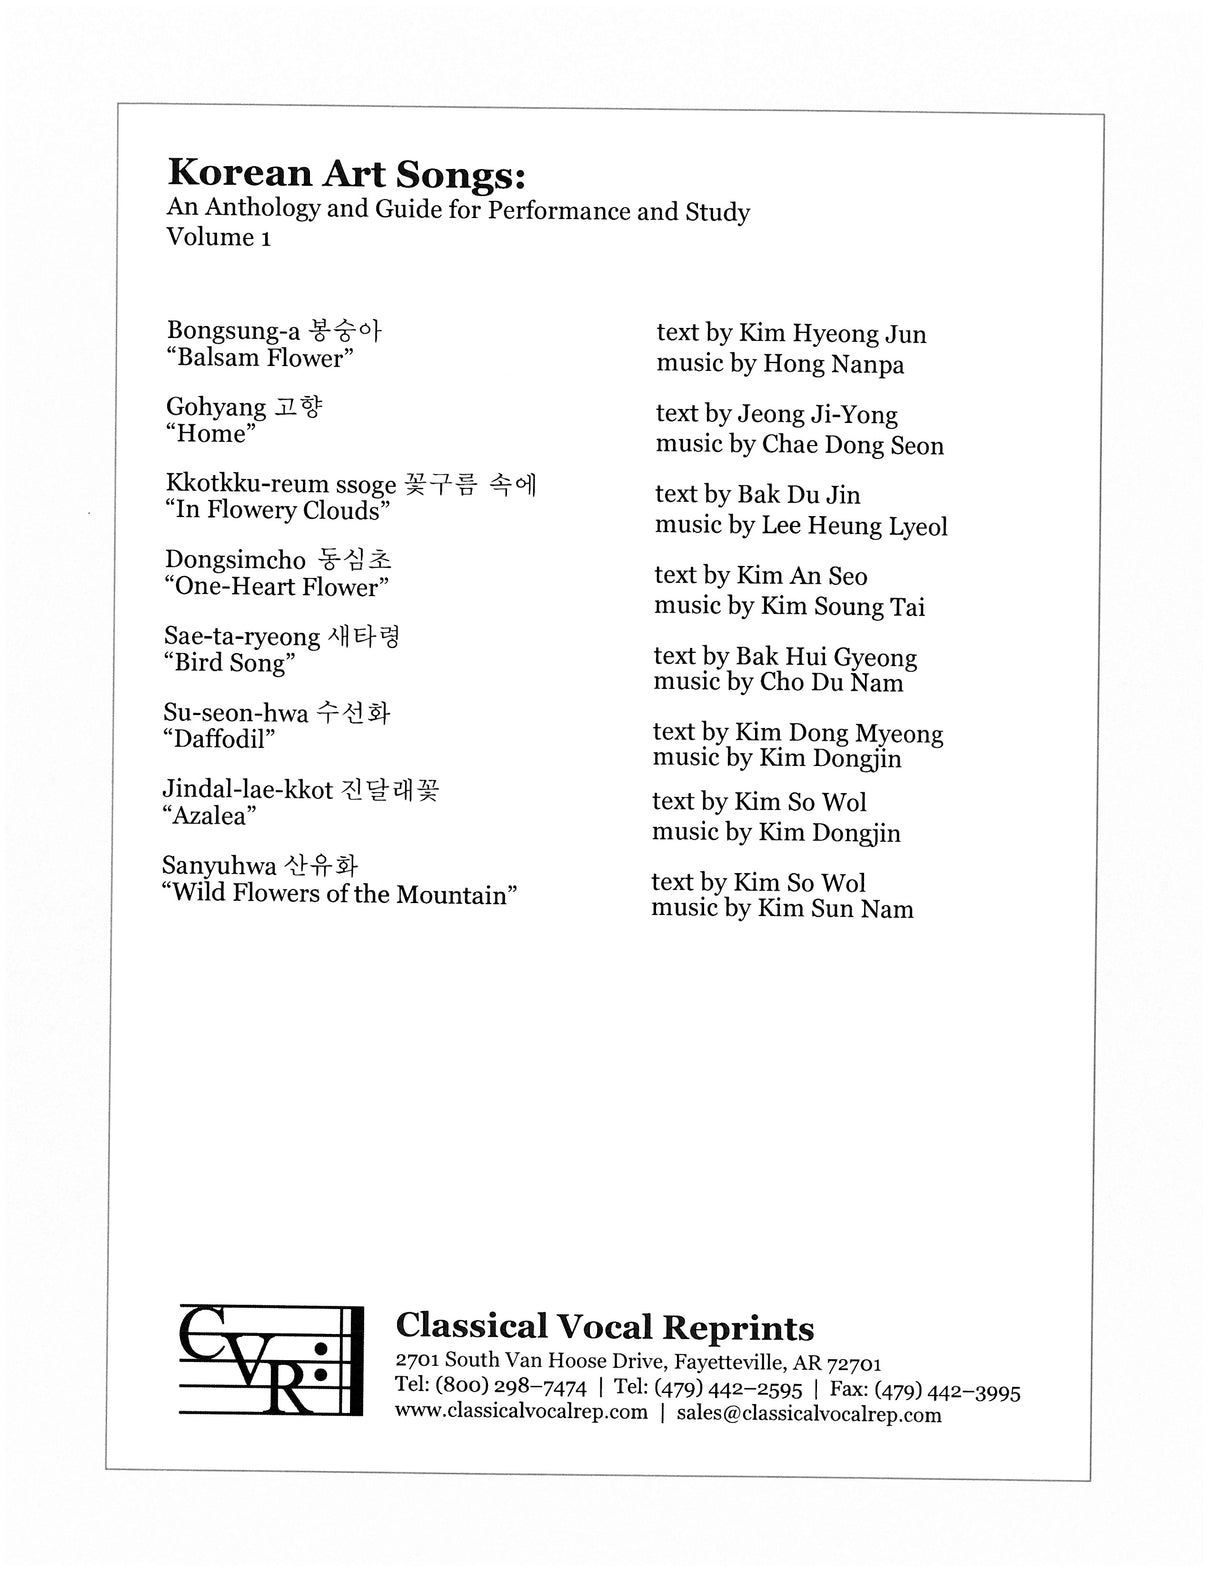 Korean Art Songs - Volume 1